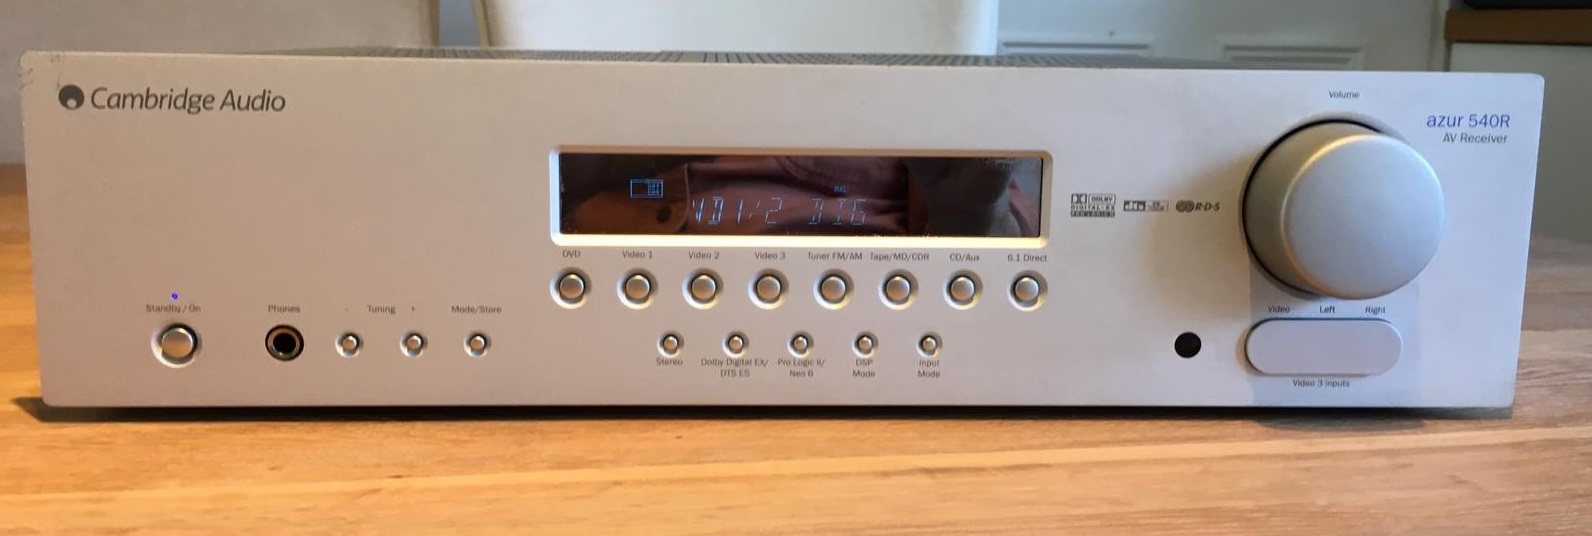 [FS] - Cambridge Audio 540R v2.0 AV receiver | pink fish media